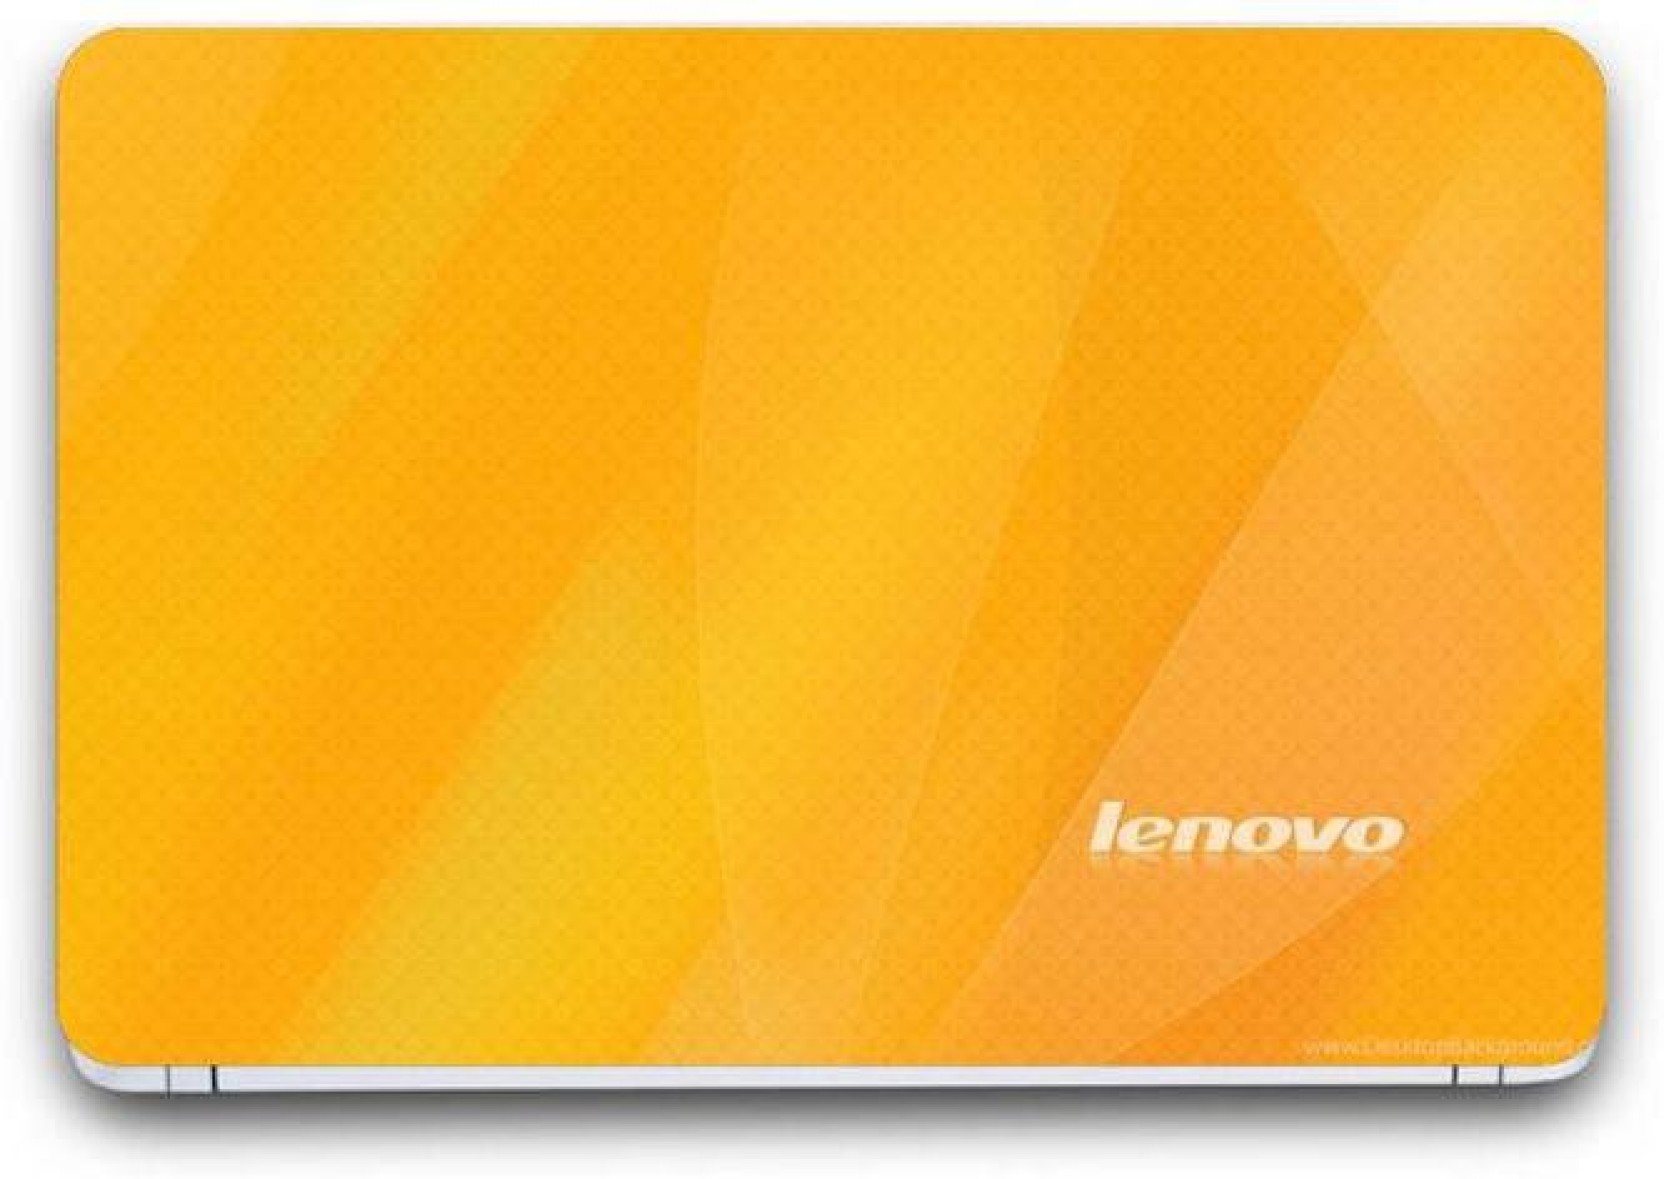 carta da parati lenovo,giallo,arancia,tecnologia